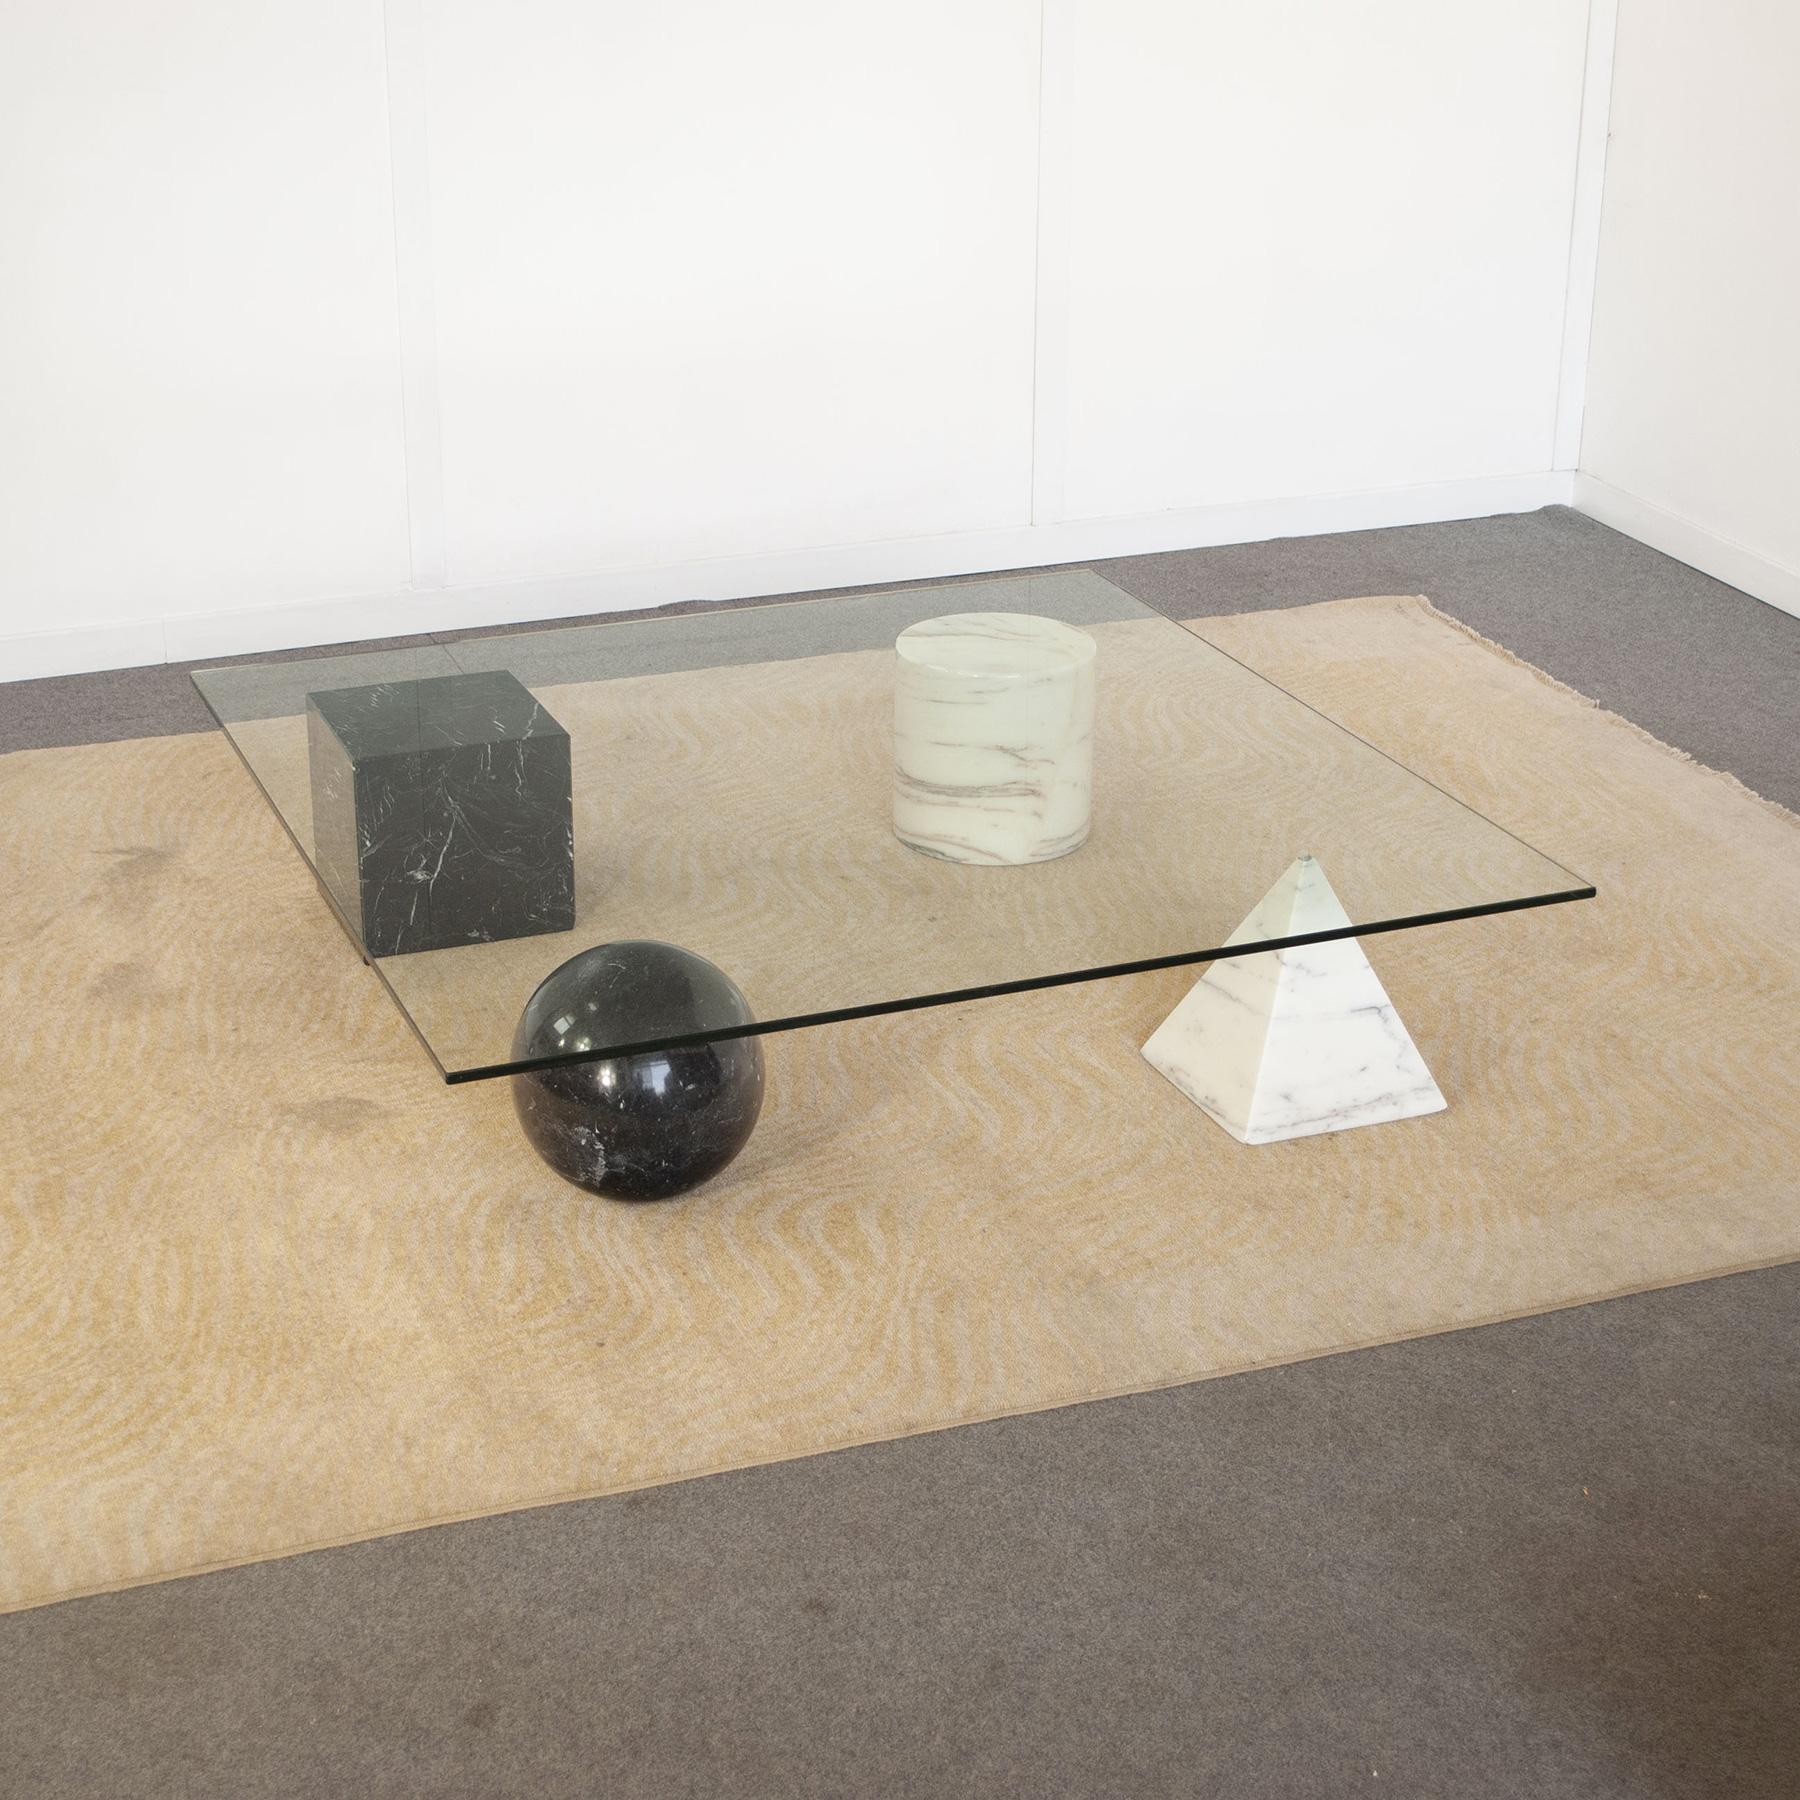 Table basse avec plateau en verre et pieds aux formes géométriques en marbre de Carrare mod. Metafora par le designer Gianni Vignelli de Casigliani au début des années 1980.